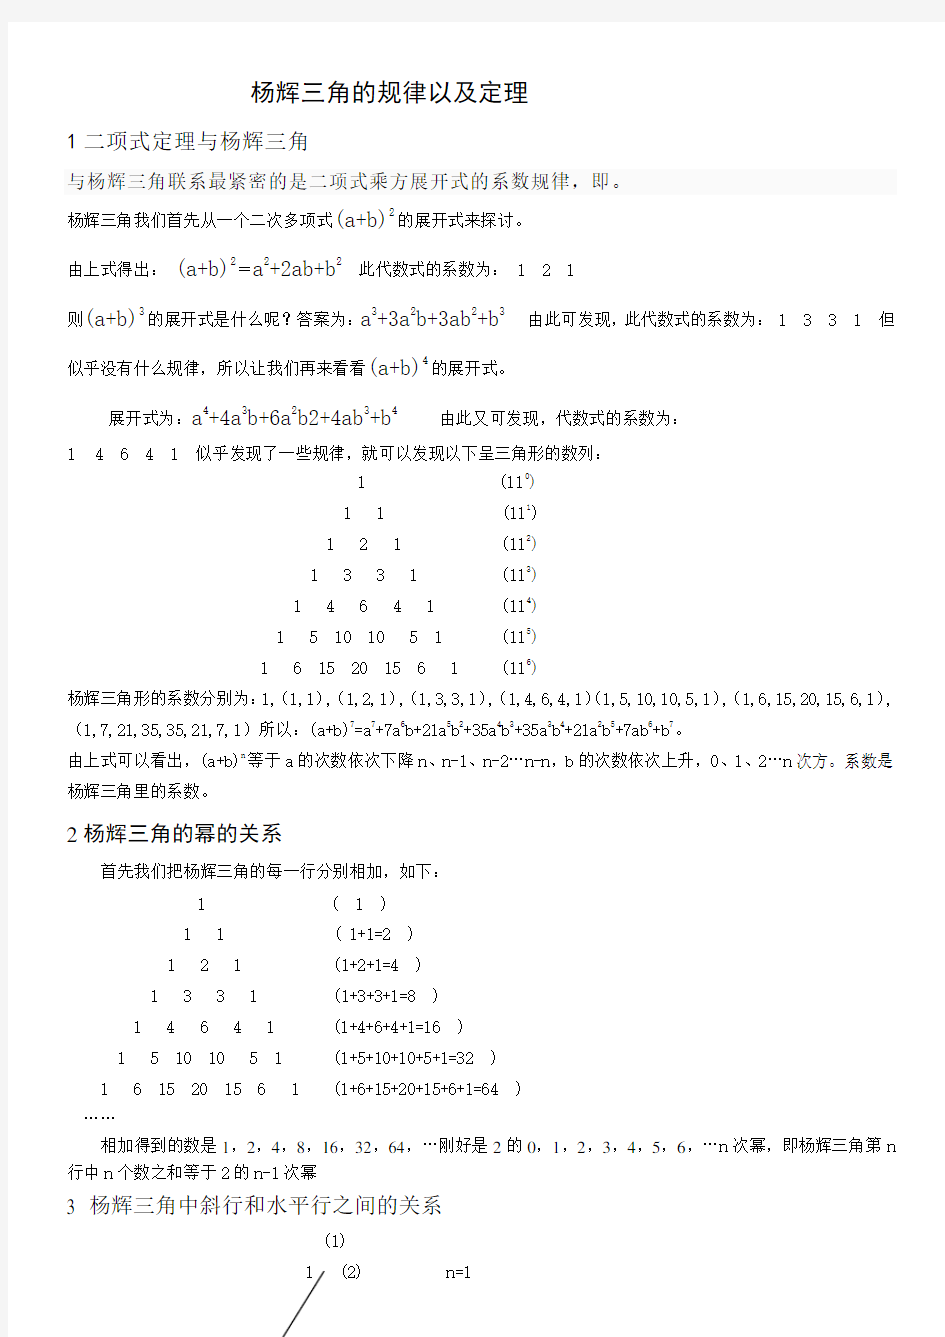 杨辉三角的规律以及推导公式 (3)